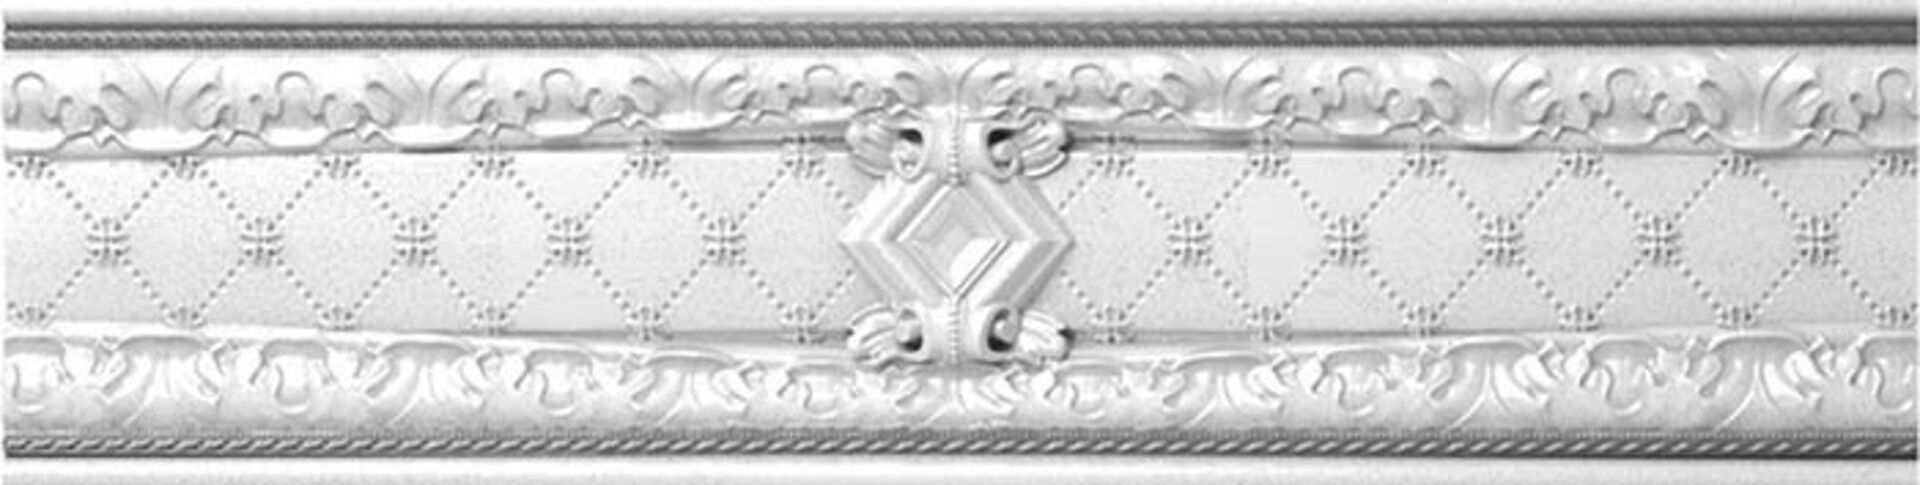 Керамическая плитка CEN. LONDON R 7*30 / коллекция BUXY-MODUS-LONDON / производитель DUAL GRES / страна Испания